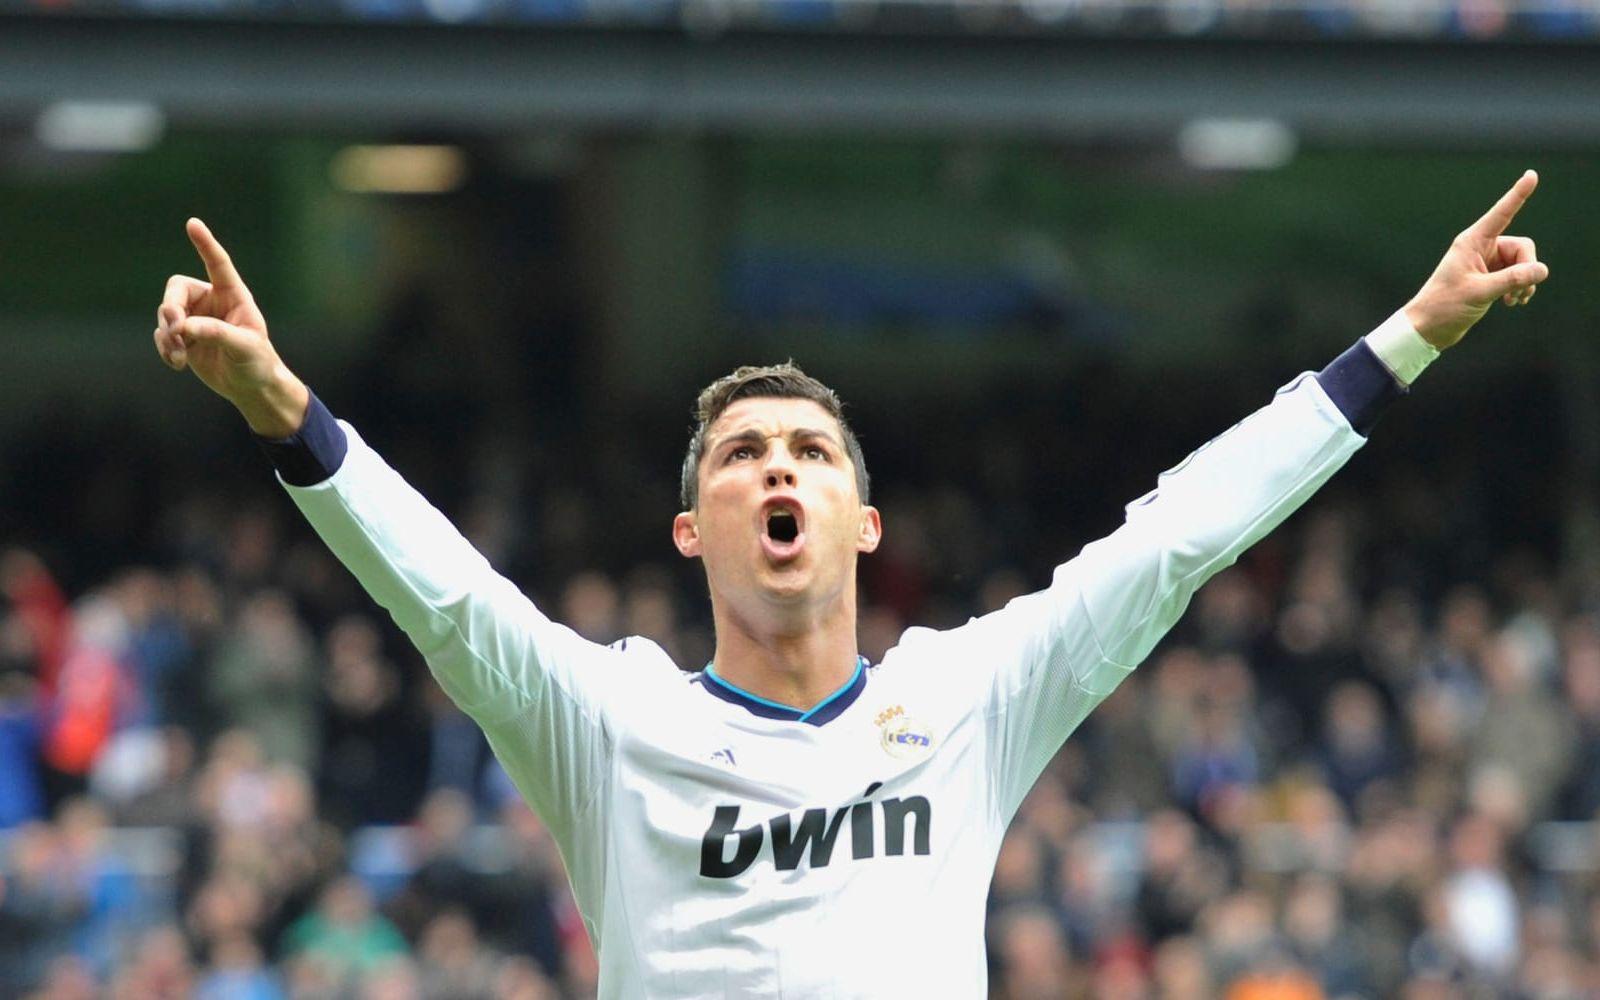 2013. Vinnare: Cristiano Ronaldo, Portugal och Real Madrid. Portugisen vann före Lionel Messi och Bayern Münchens fransman Franck Ribéry. Foto: Bildbyrån